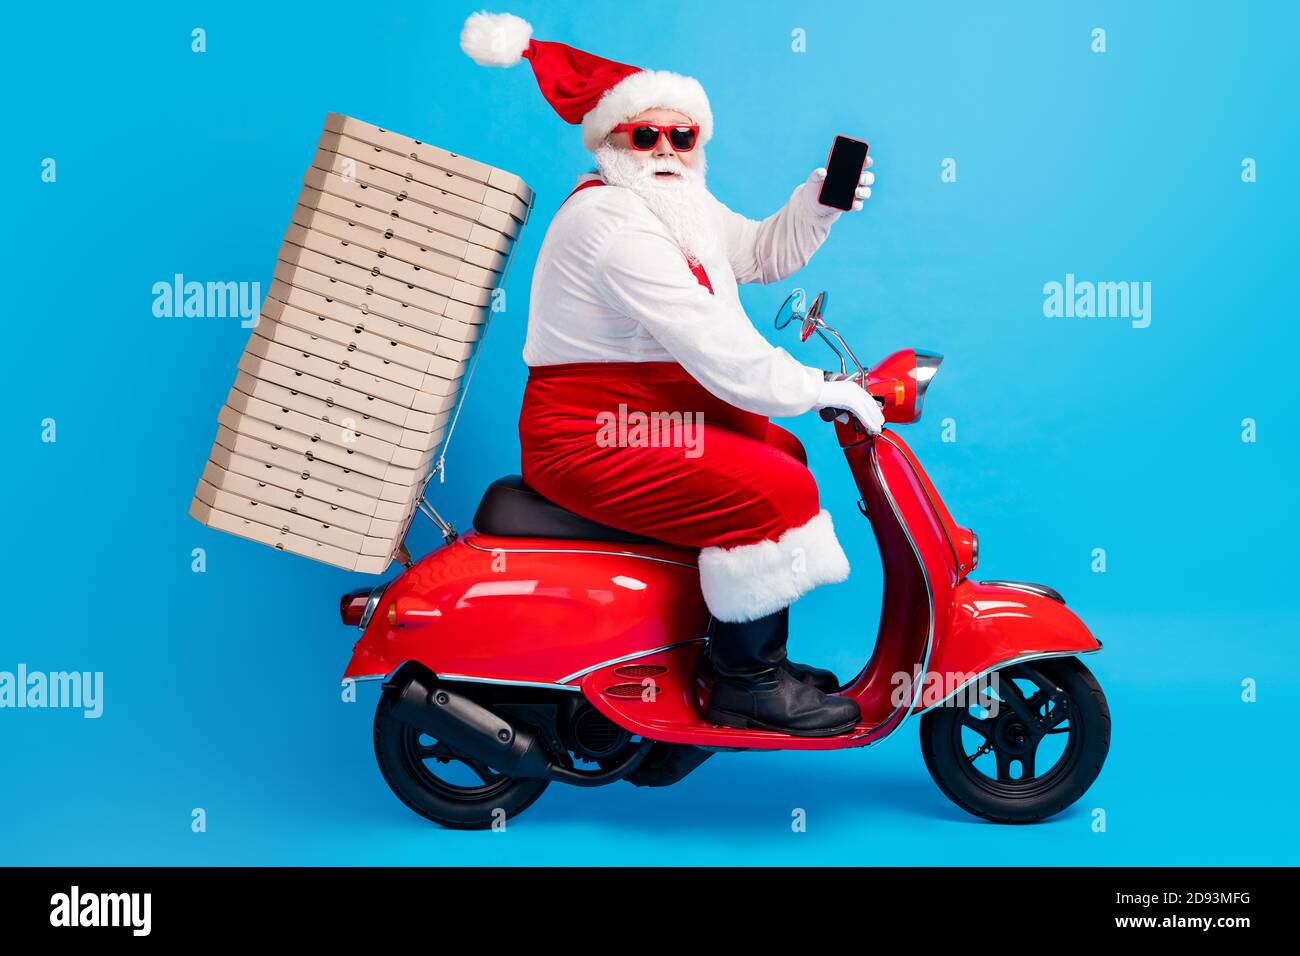 Ganzkörper-Profil Seitenfoto von weißen grauen Haaren bärtig santa claus Antrieb Motorrad Reise Weihnachten Heiligabend Haufen Pizza tragen roten Hut Kostüm Stockfoto